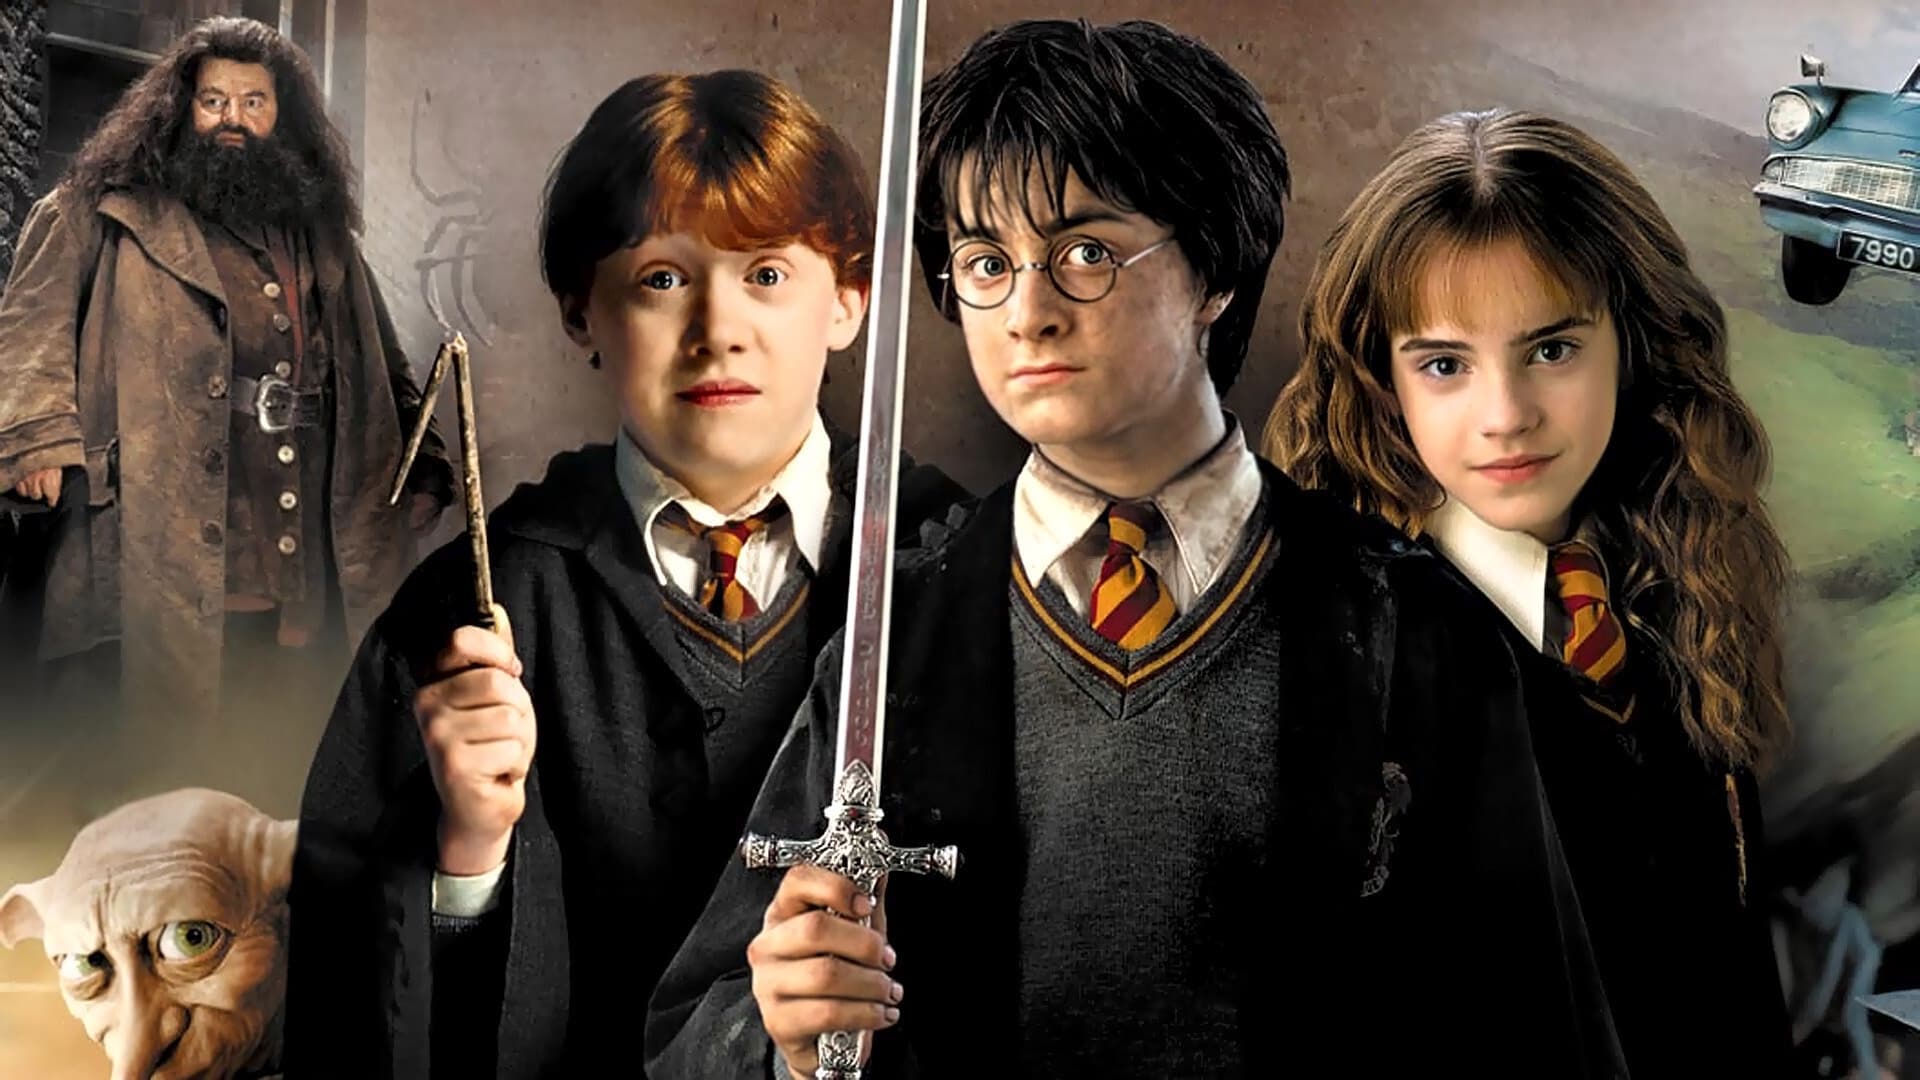 Image du film Harry Potter et la Chambre des secrets (version longue) pwkpvgdbyc7cxe4aheokpx8octbjpg